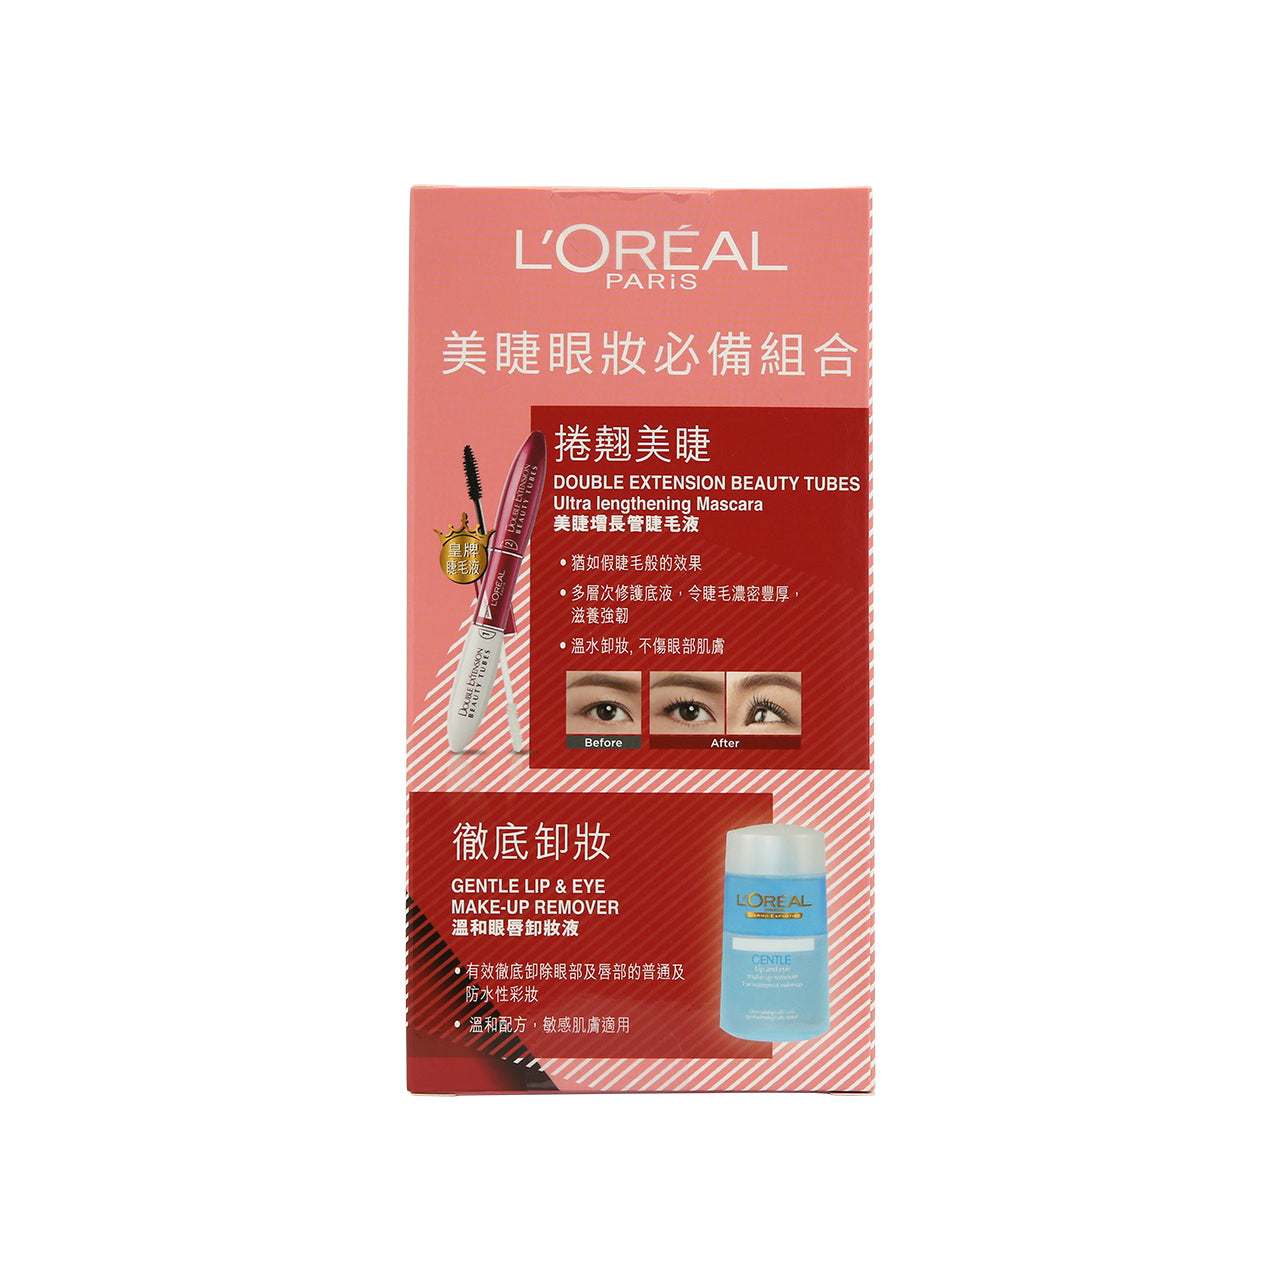 L'Oreal Beauty tube + Remover Packset 2pcs